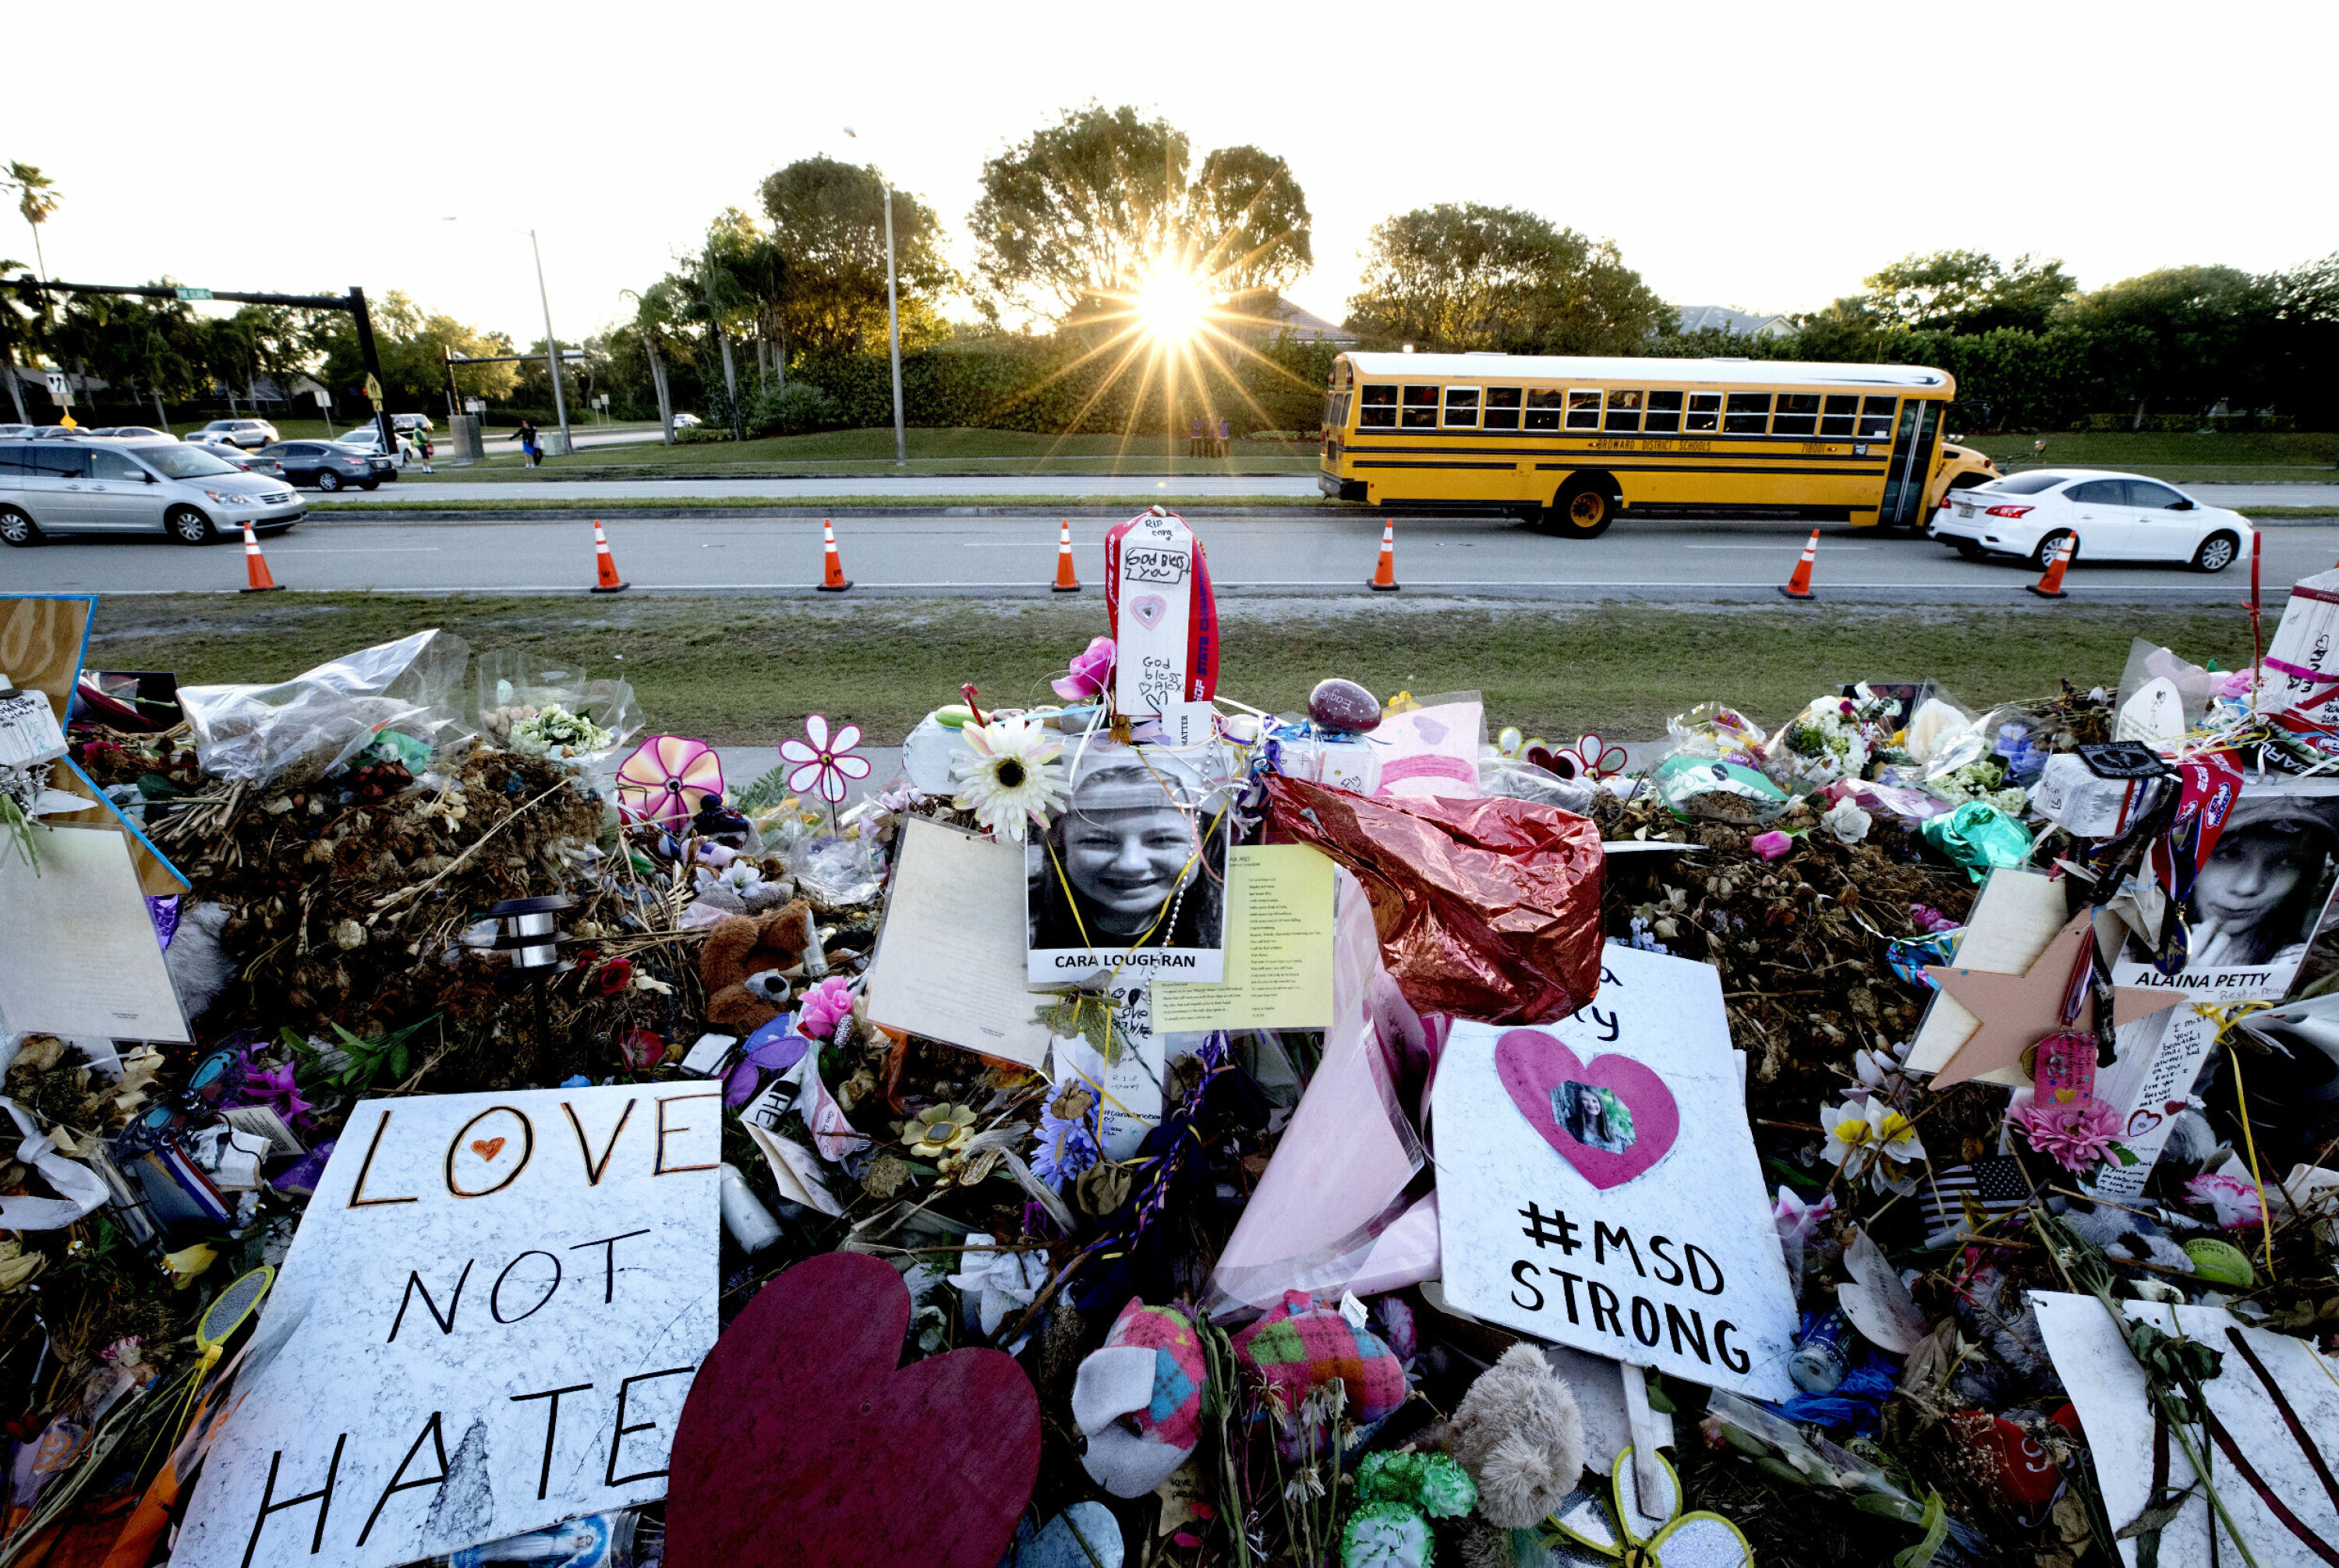 Parkland, Florida, USA 2018. 17 personer, 15 av dem elever, ble drept ved Marjory Stoneman Douglas High School av Nikolas Cruz (19). Han ble arrestert rett etter massakren. Bilder viser blomsterfjellet ved skolen.